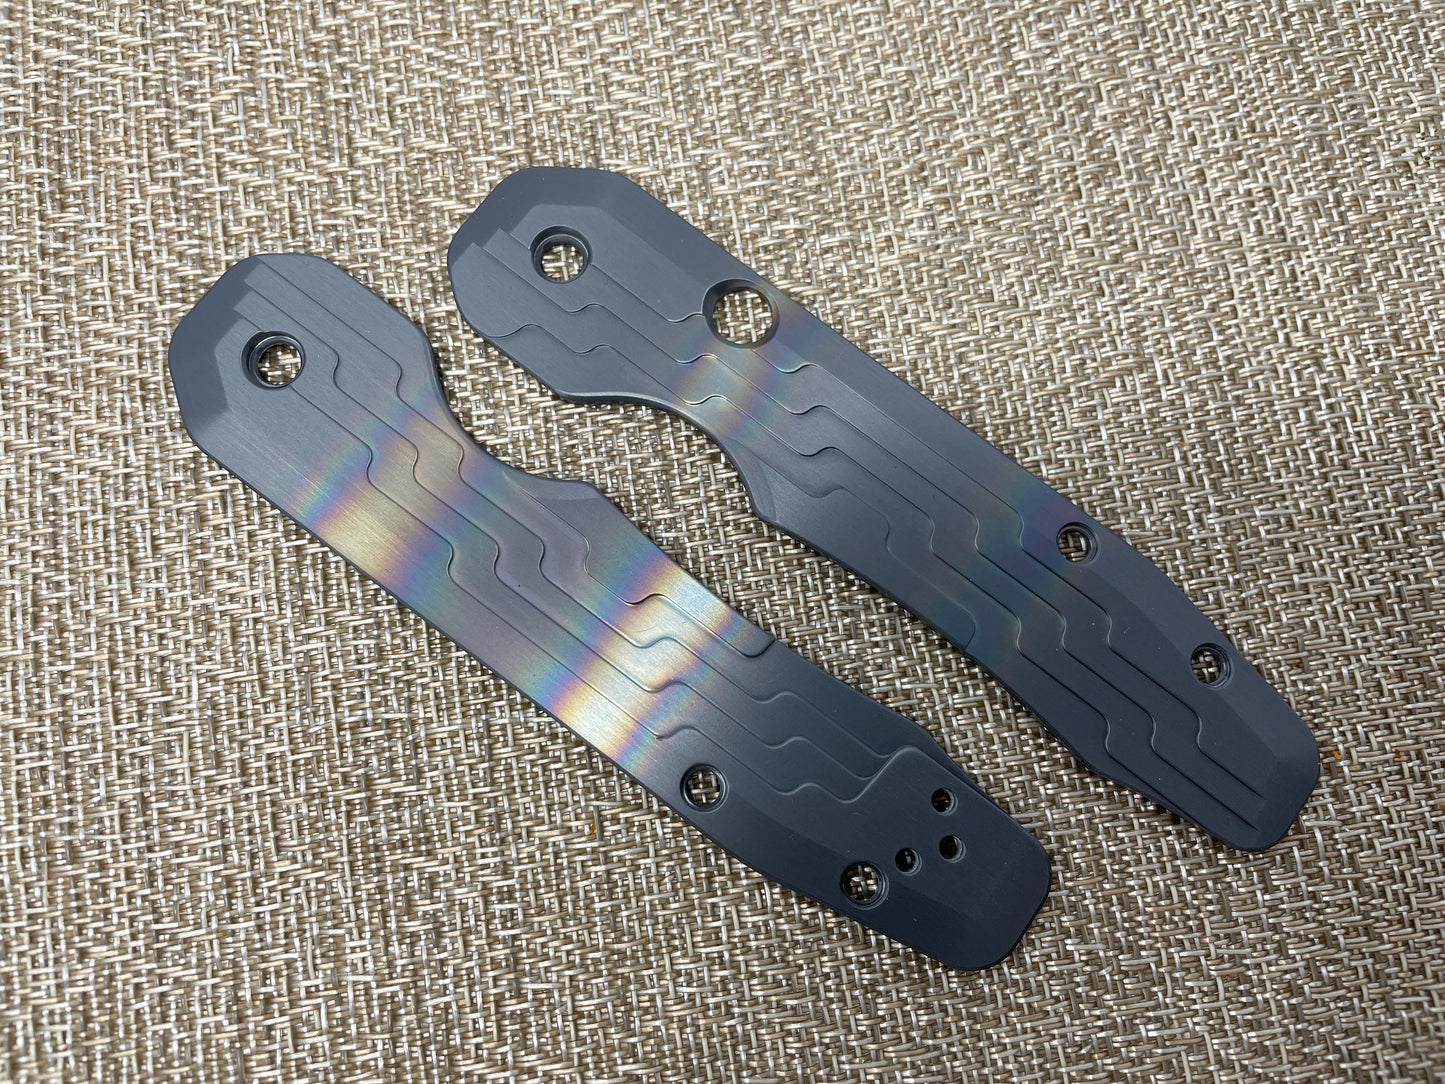 Black Rainbow AZTEC Zirconium Scales for Spyderco SMOCK